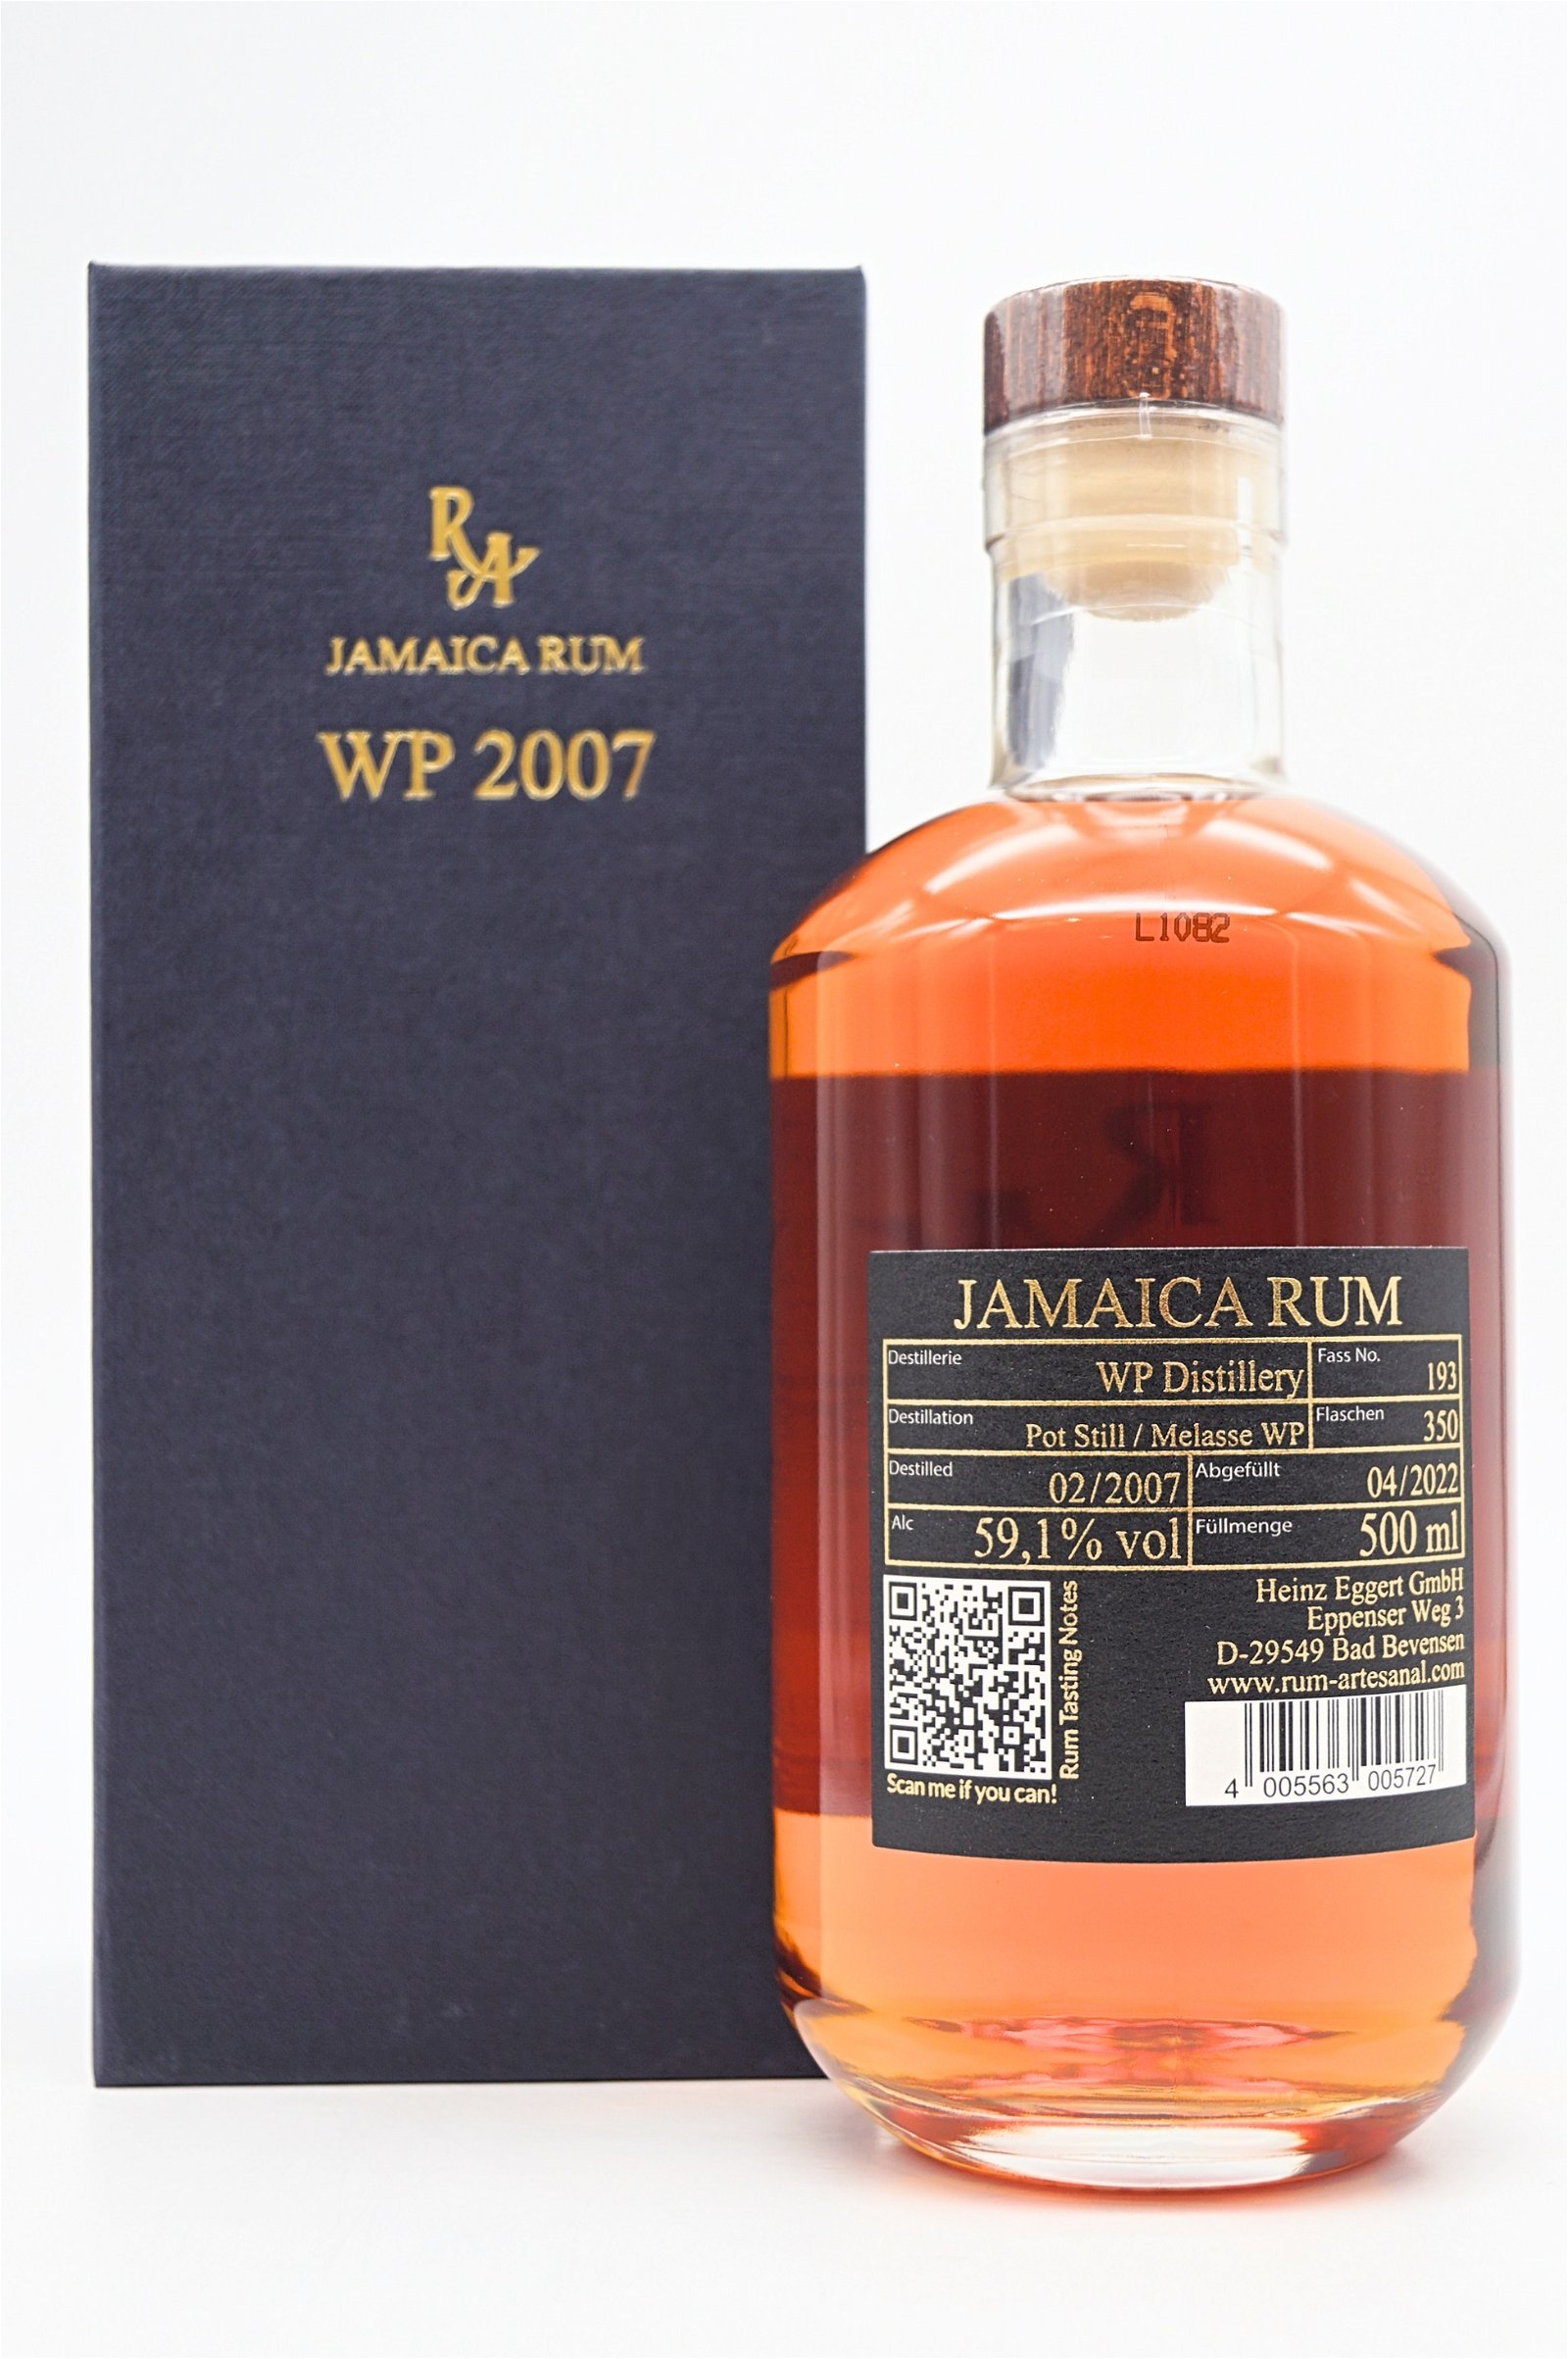 Rum Artesanal Jamaica WP 2007 Rum